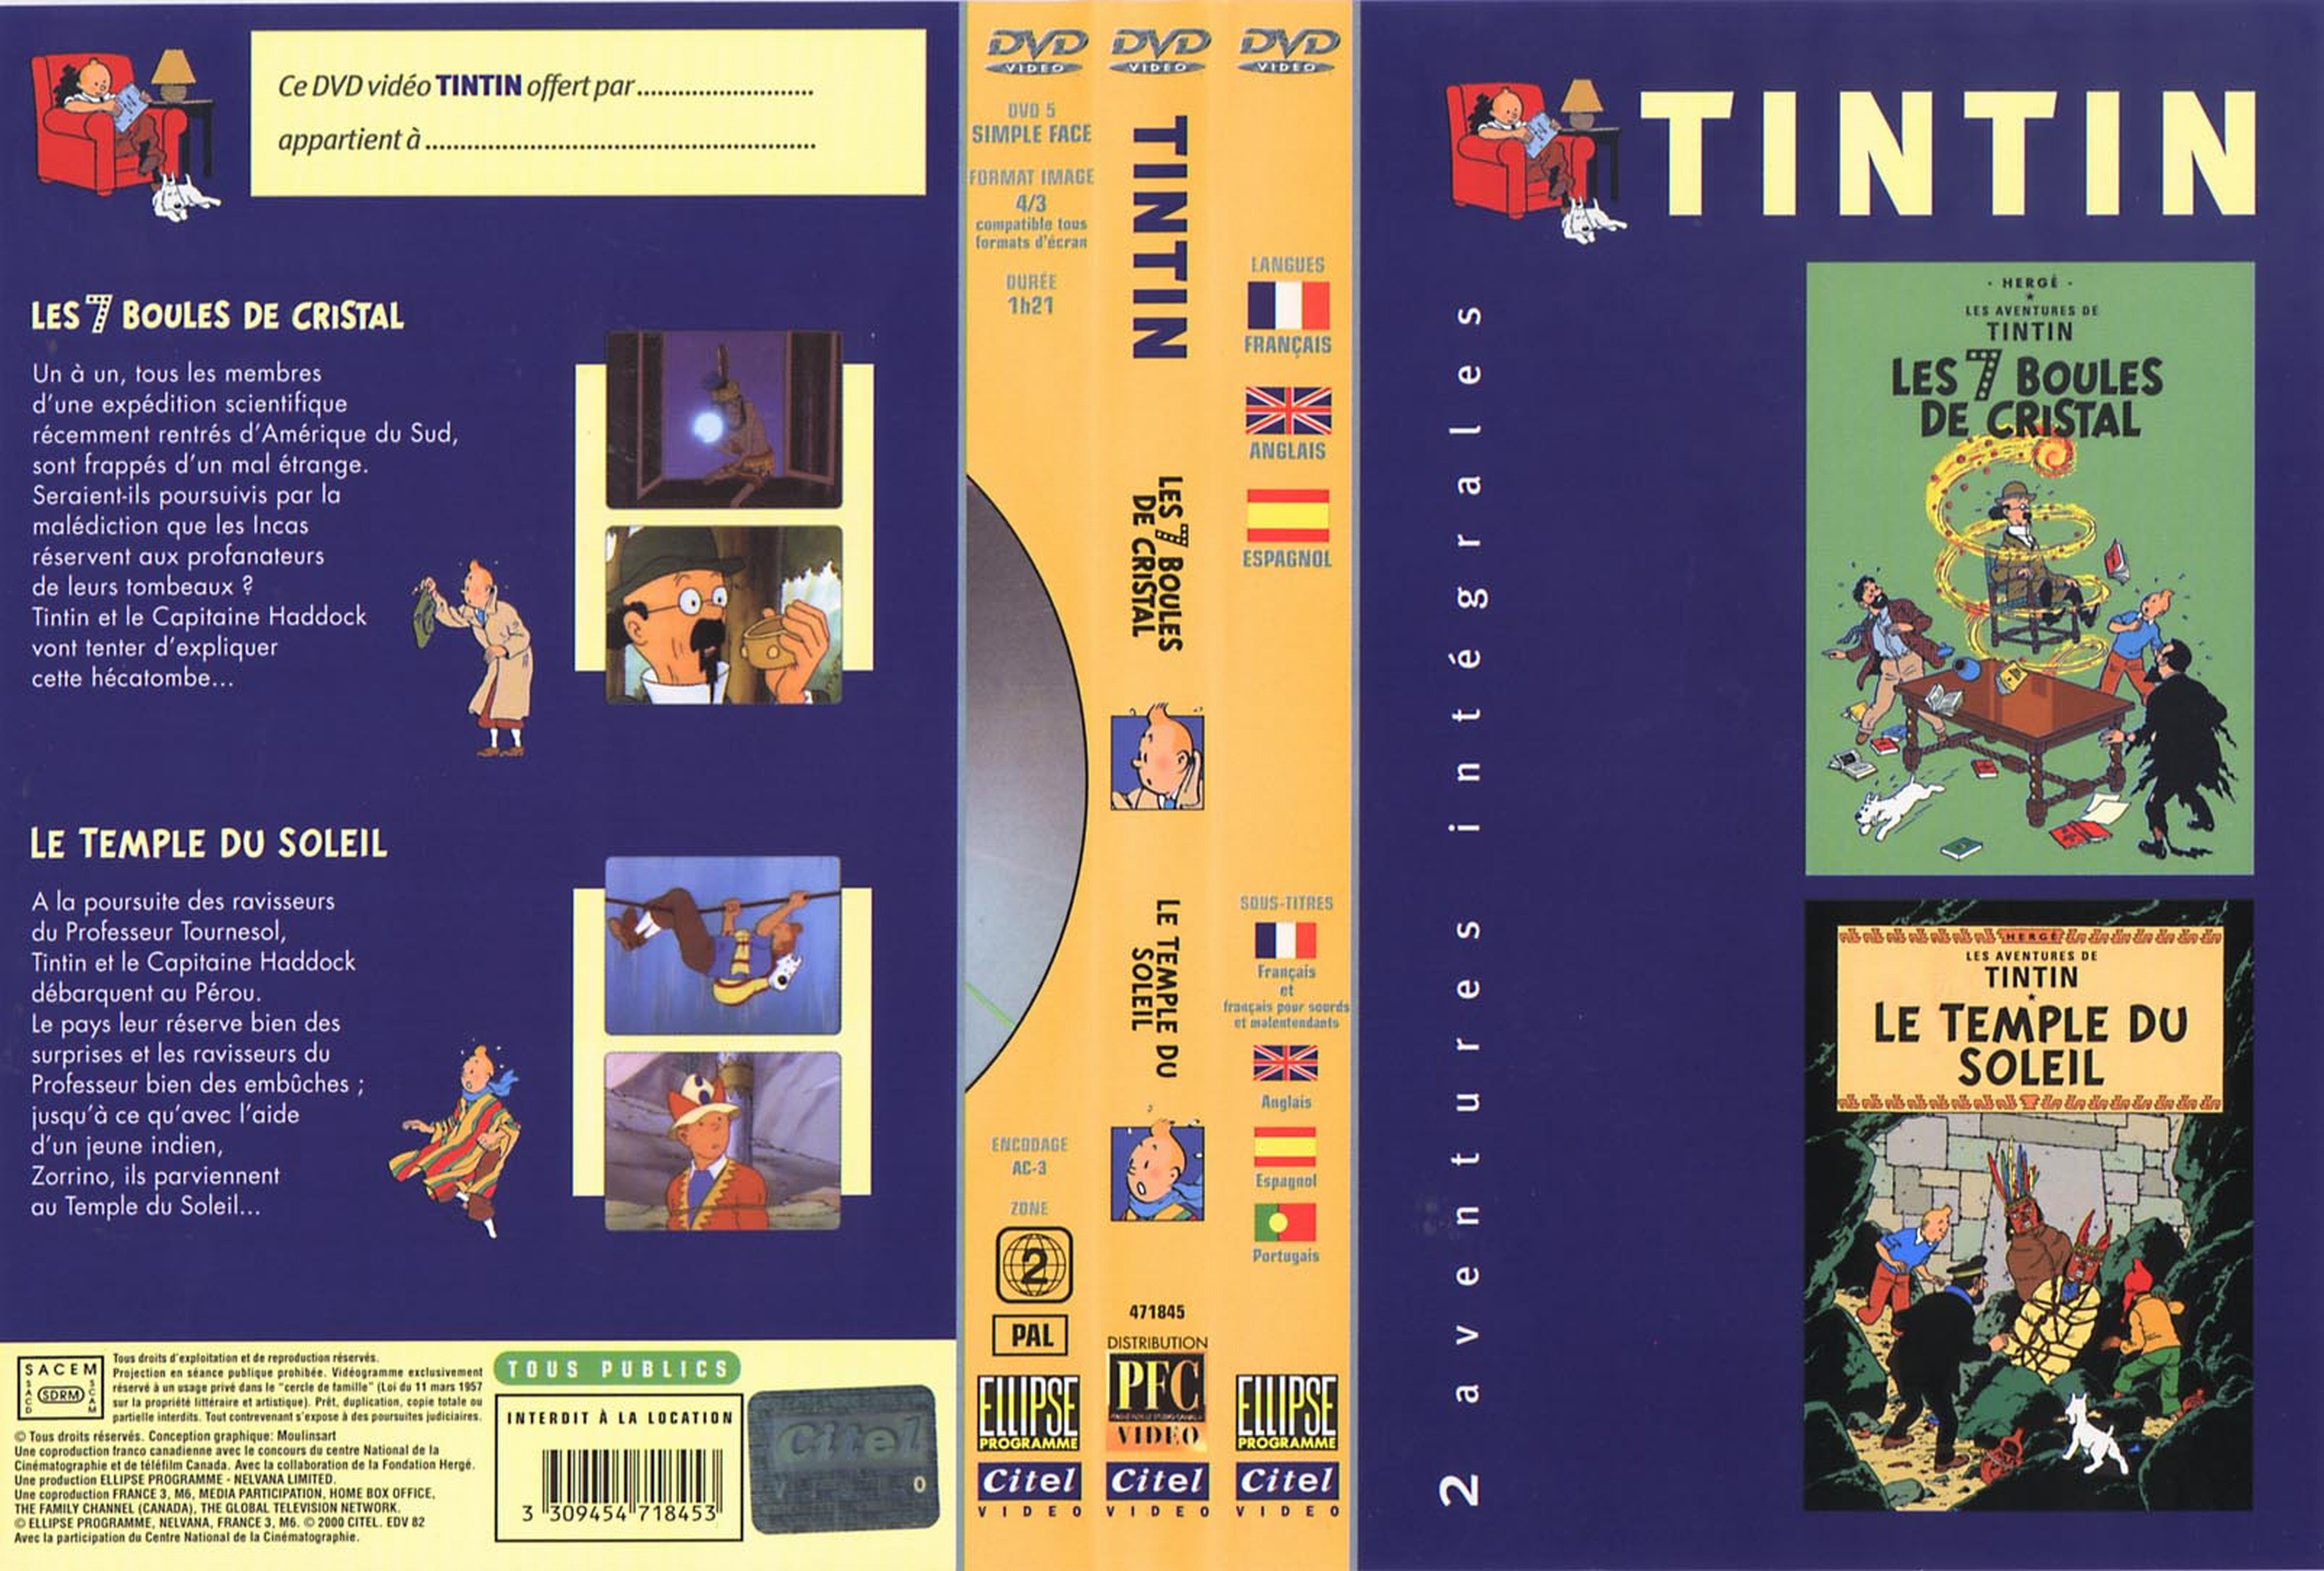 Jaquette DVD Tintin - Les 7 boules de cristal + Le temple du soleil